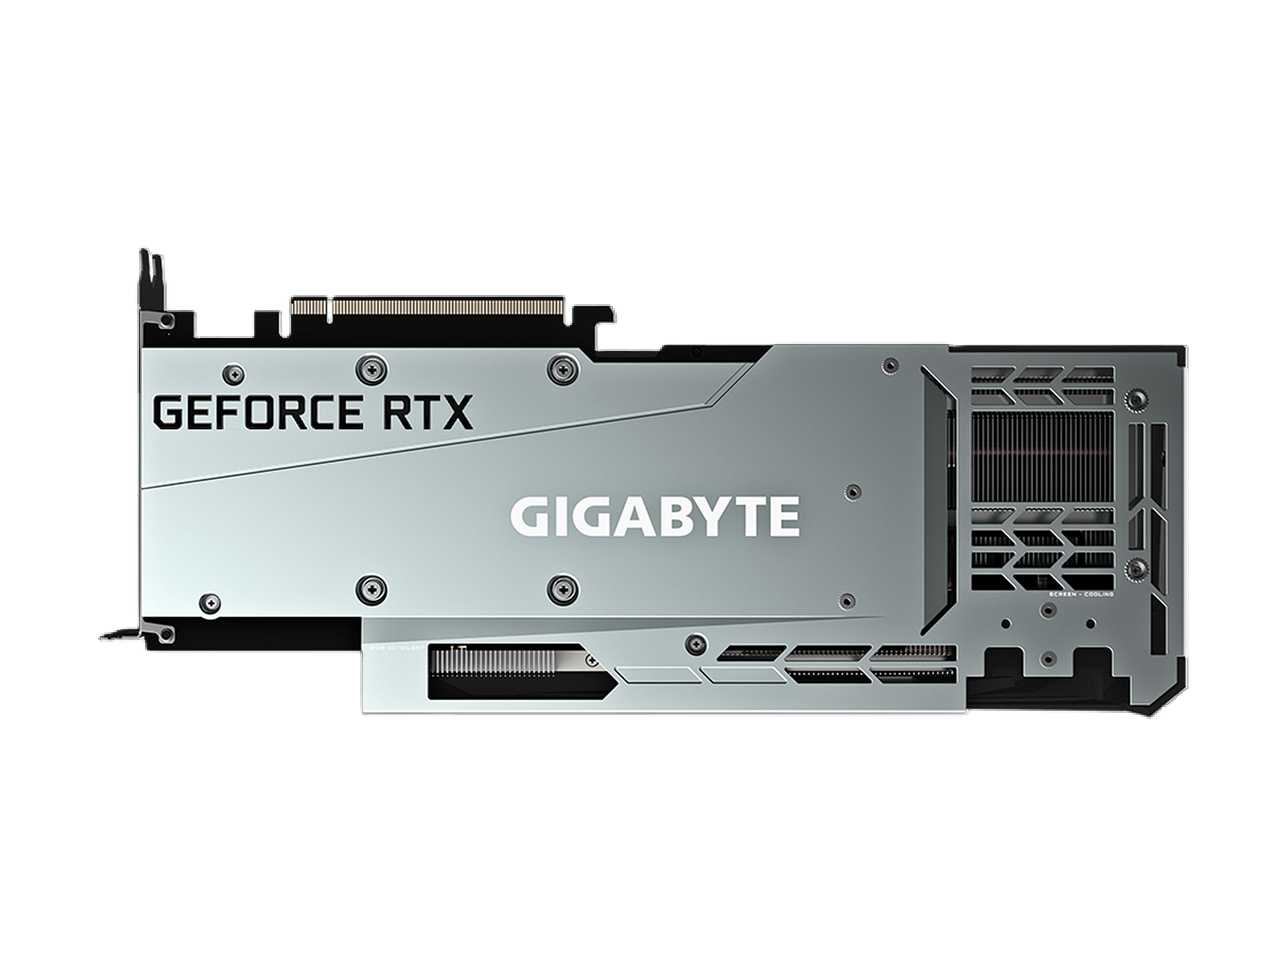 GIGABYTE Gaming GeForce RTX 3080 Ti 12GB GDDR6X PCI Express 4.0 ATX Video Card GV-N308TGAMING OC-12GD